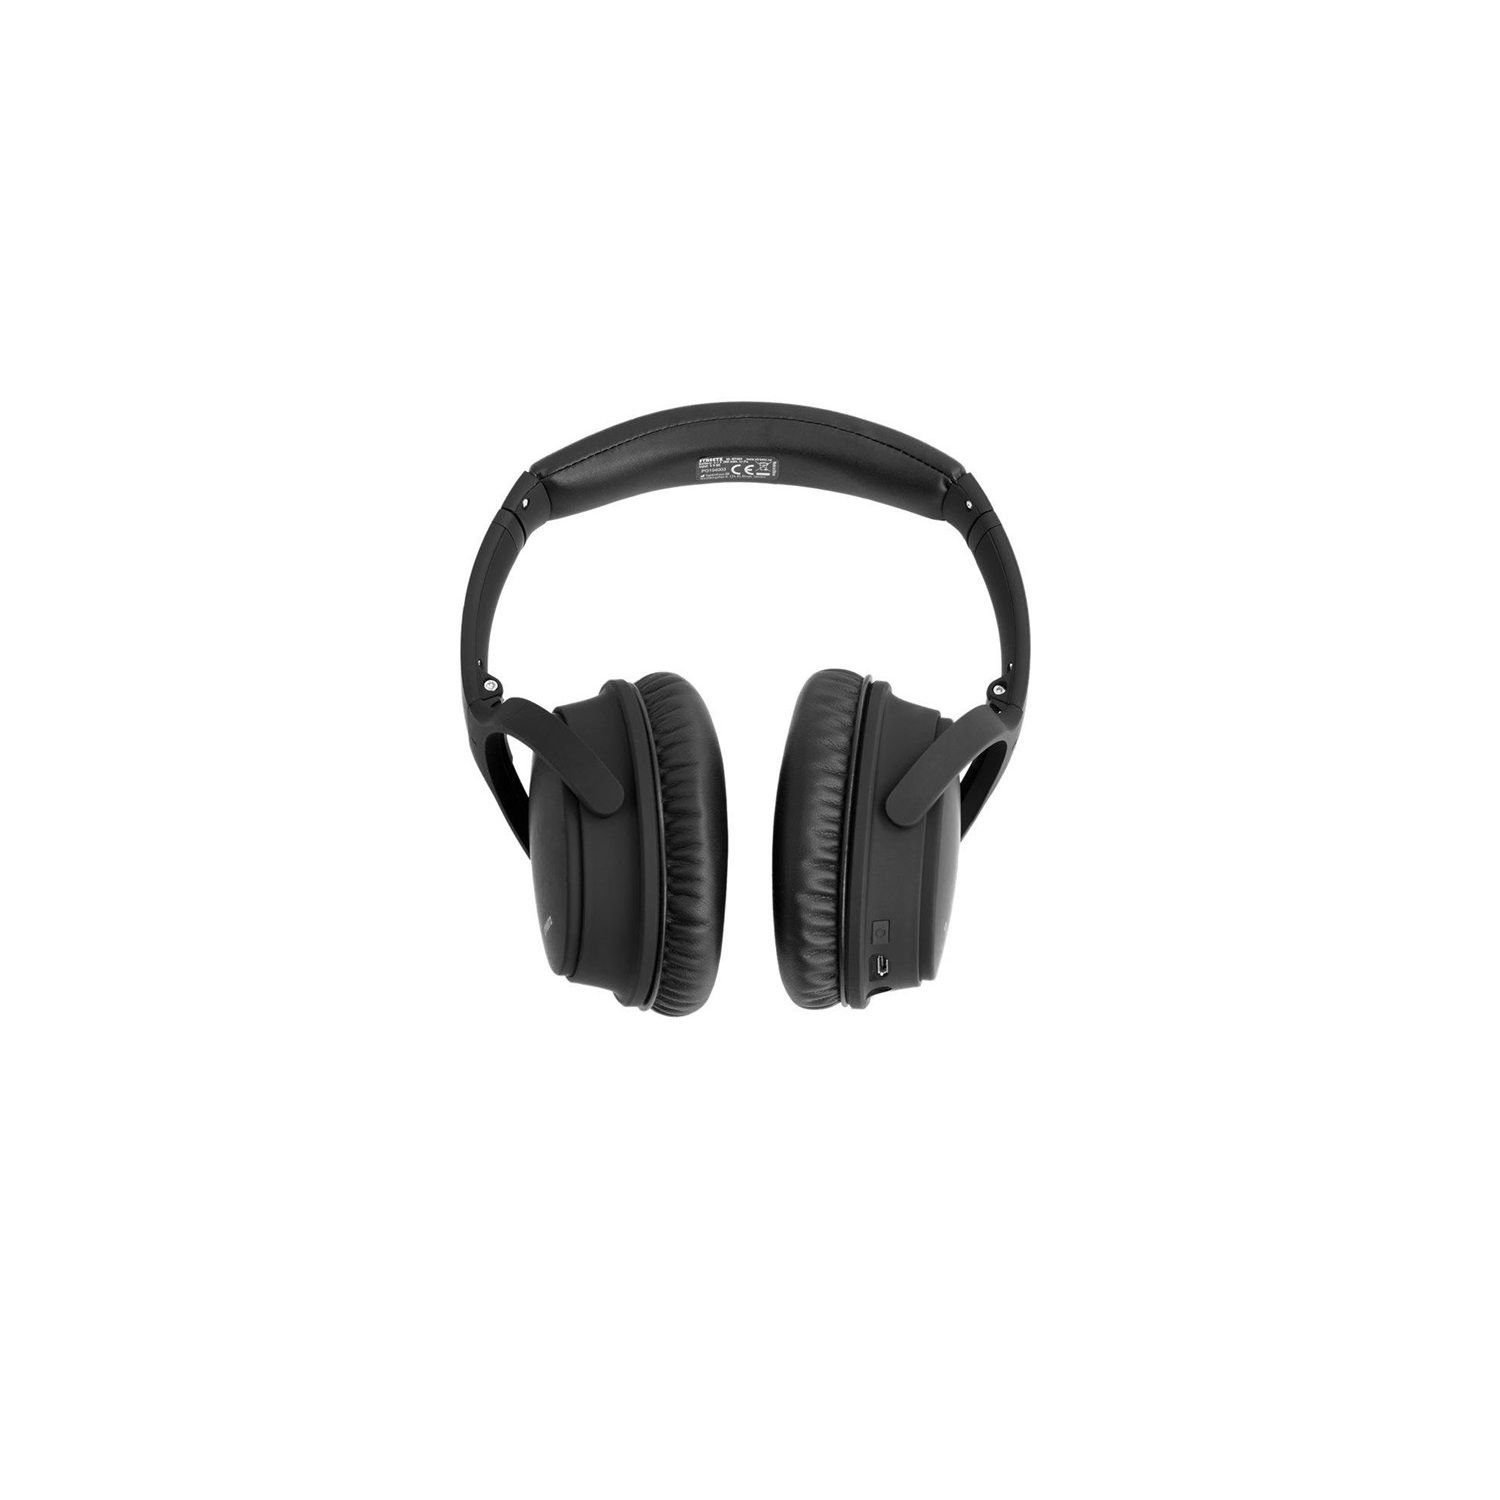 STREETZ Herstellergarantie) Kopfhörer 5 Jahre Mikrofon, inkl. Kopfhörer Bluetooth, mit (integriertes Geräuschunterdrückung aktiver Bluetooth HL-BT404